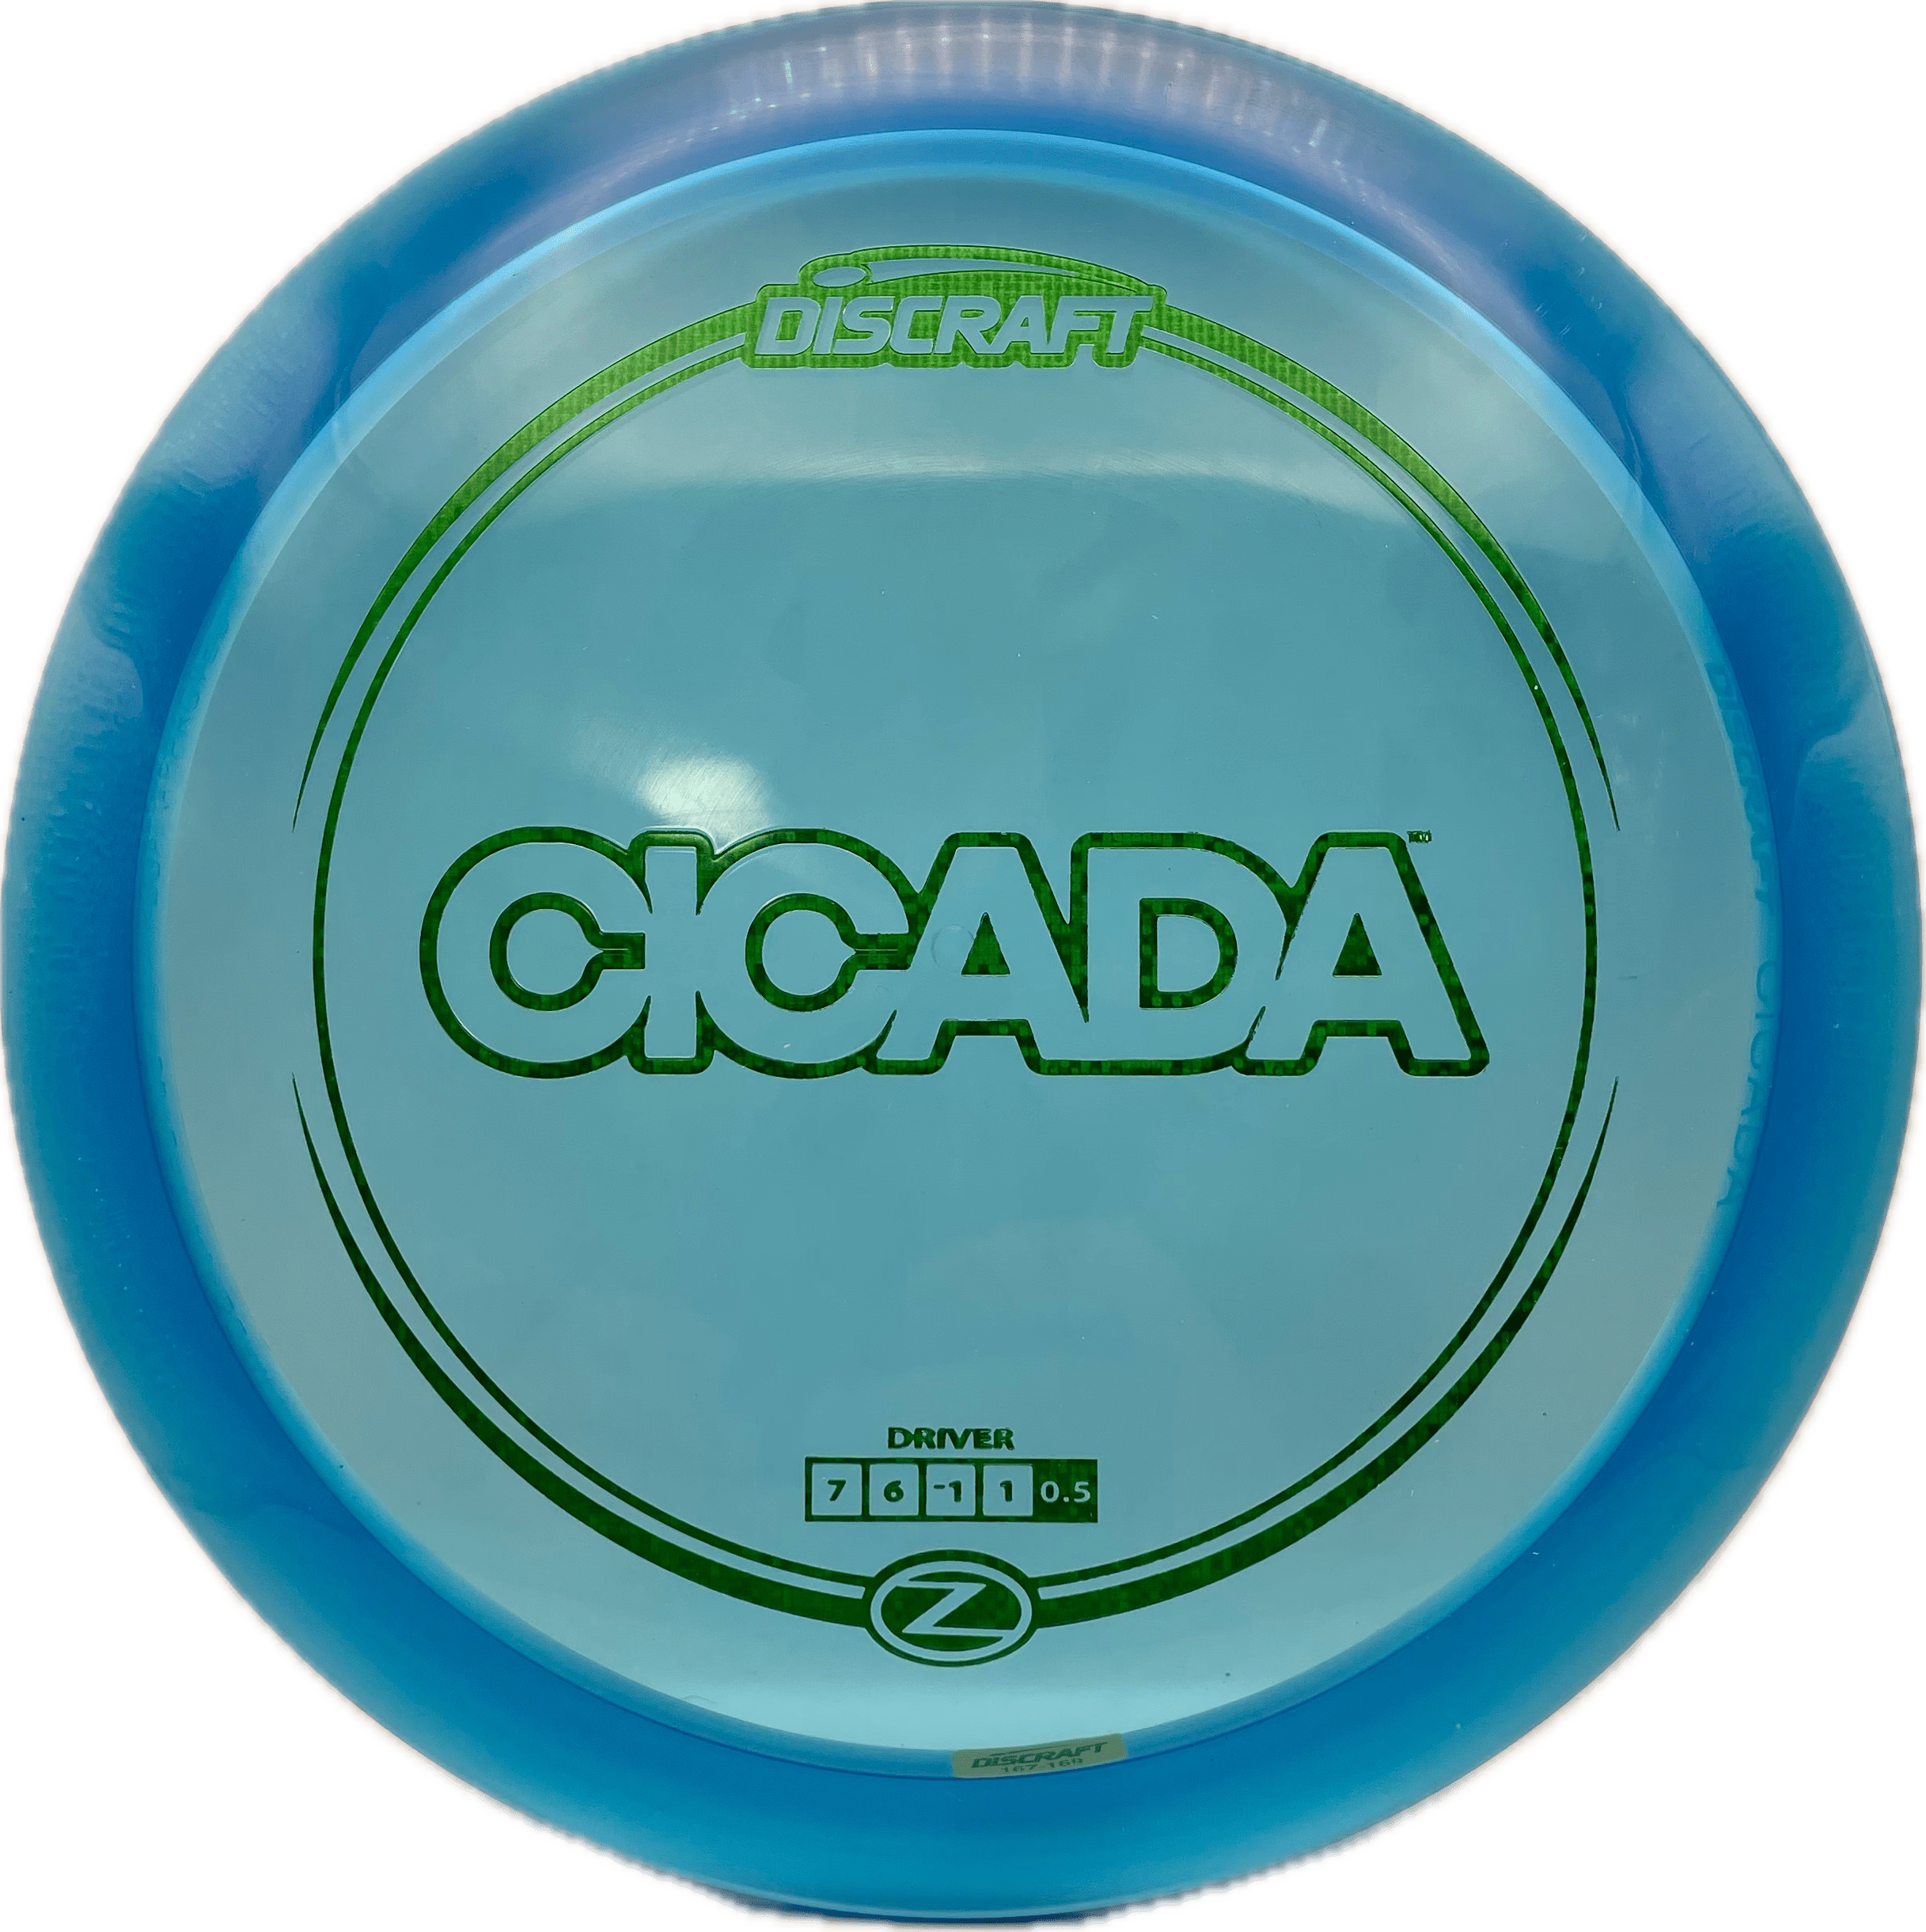 Overthrow Disc Golf Disc Discraft Cicada, Z, 167-169, Blue, Green Matrix